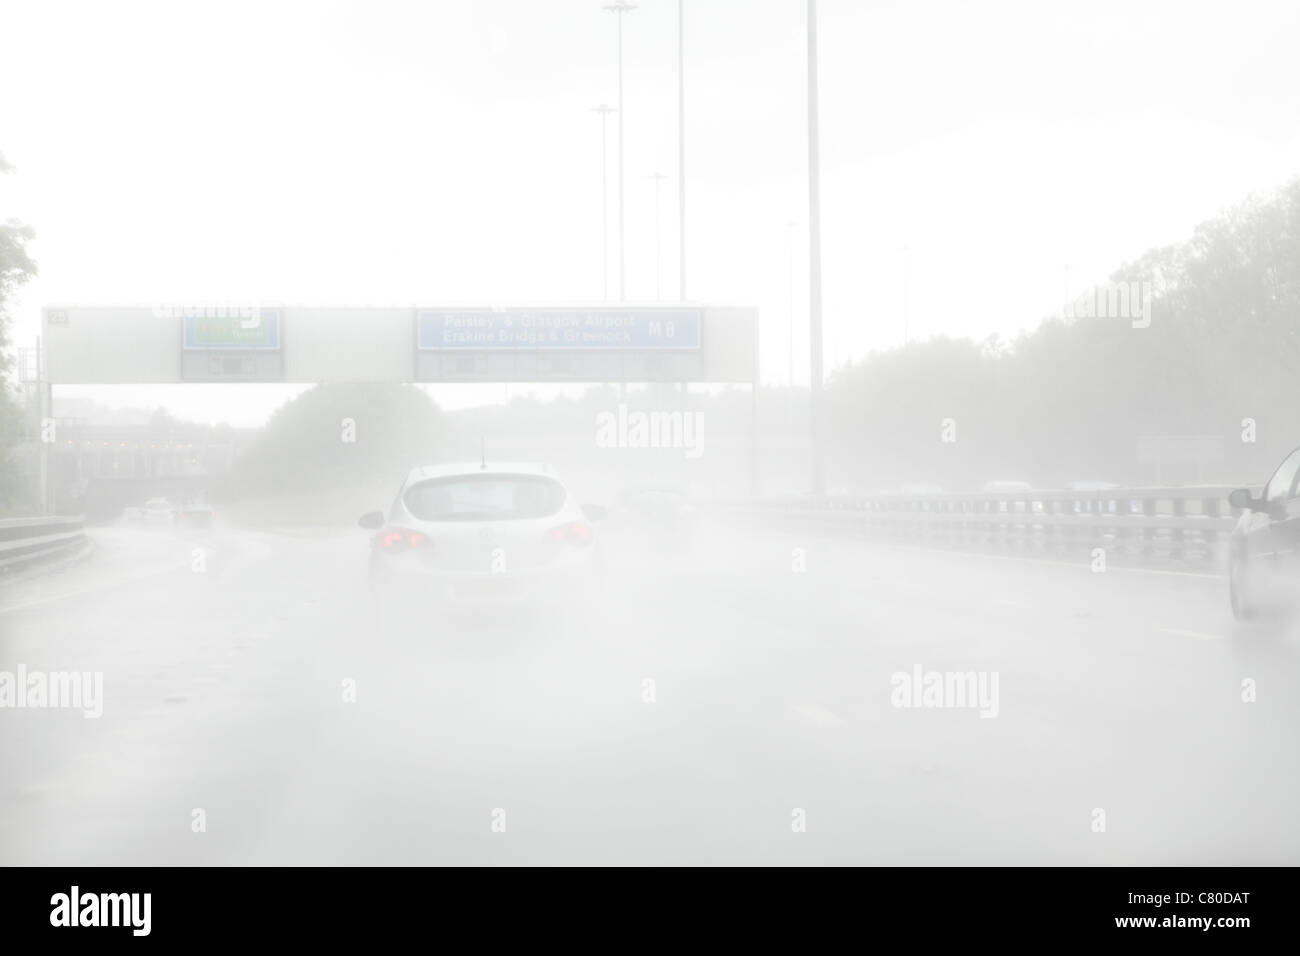 Regen und Gischt verursacht schlechten Sichtverhältnissen auf einer Autobahn, UK Stockfoto